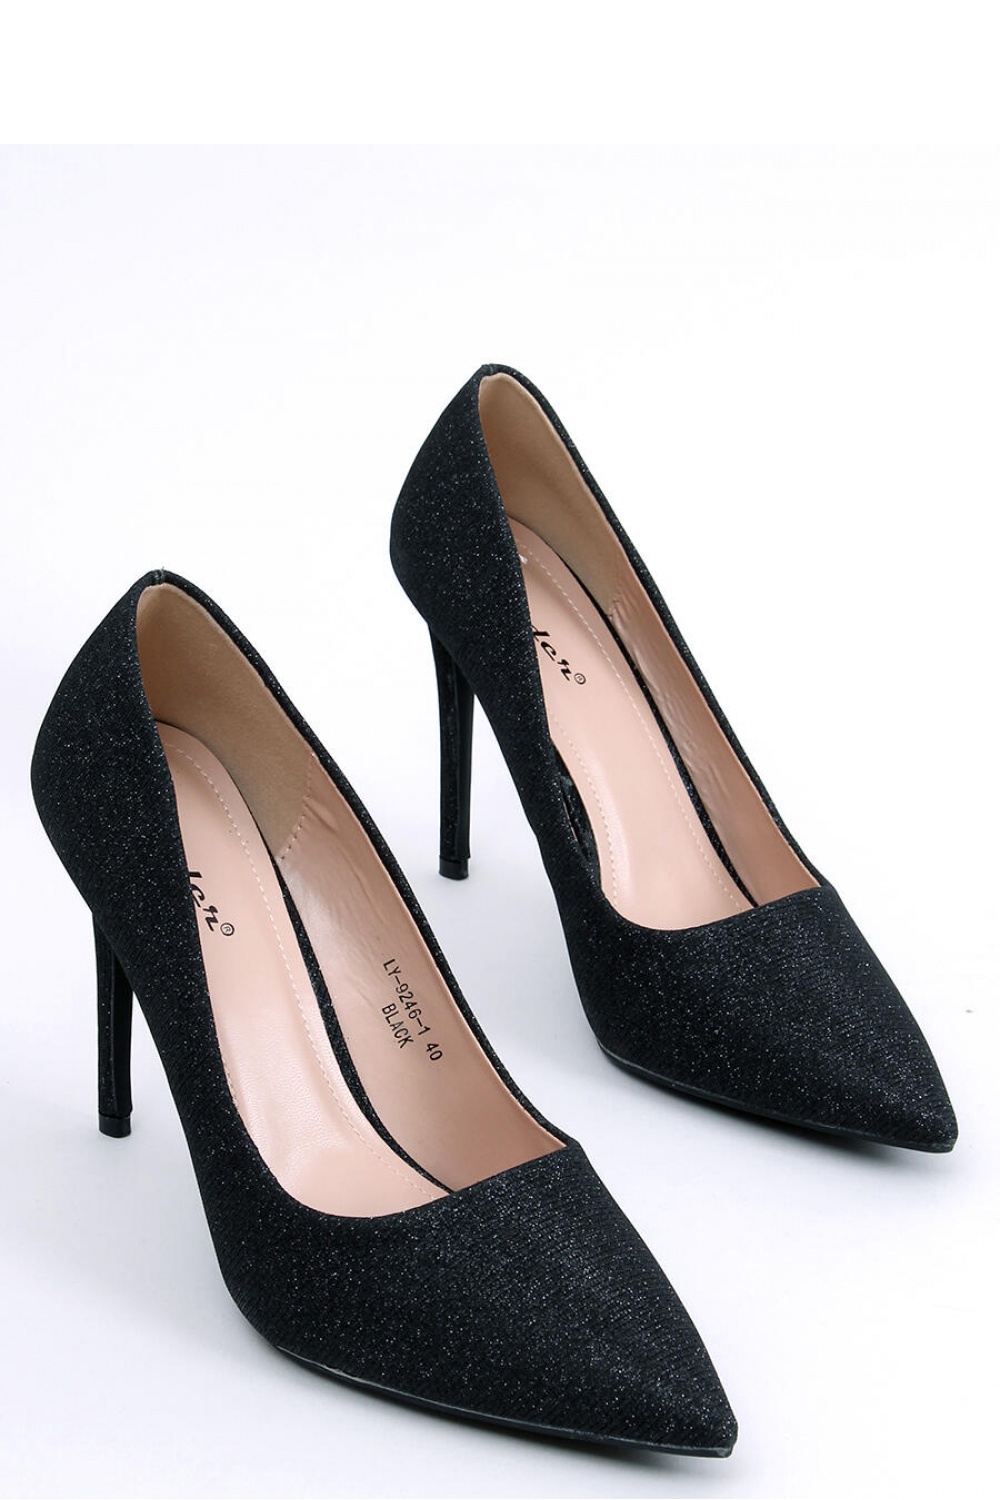 High heels model 174113 Inello